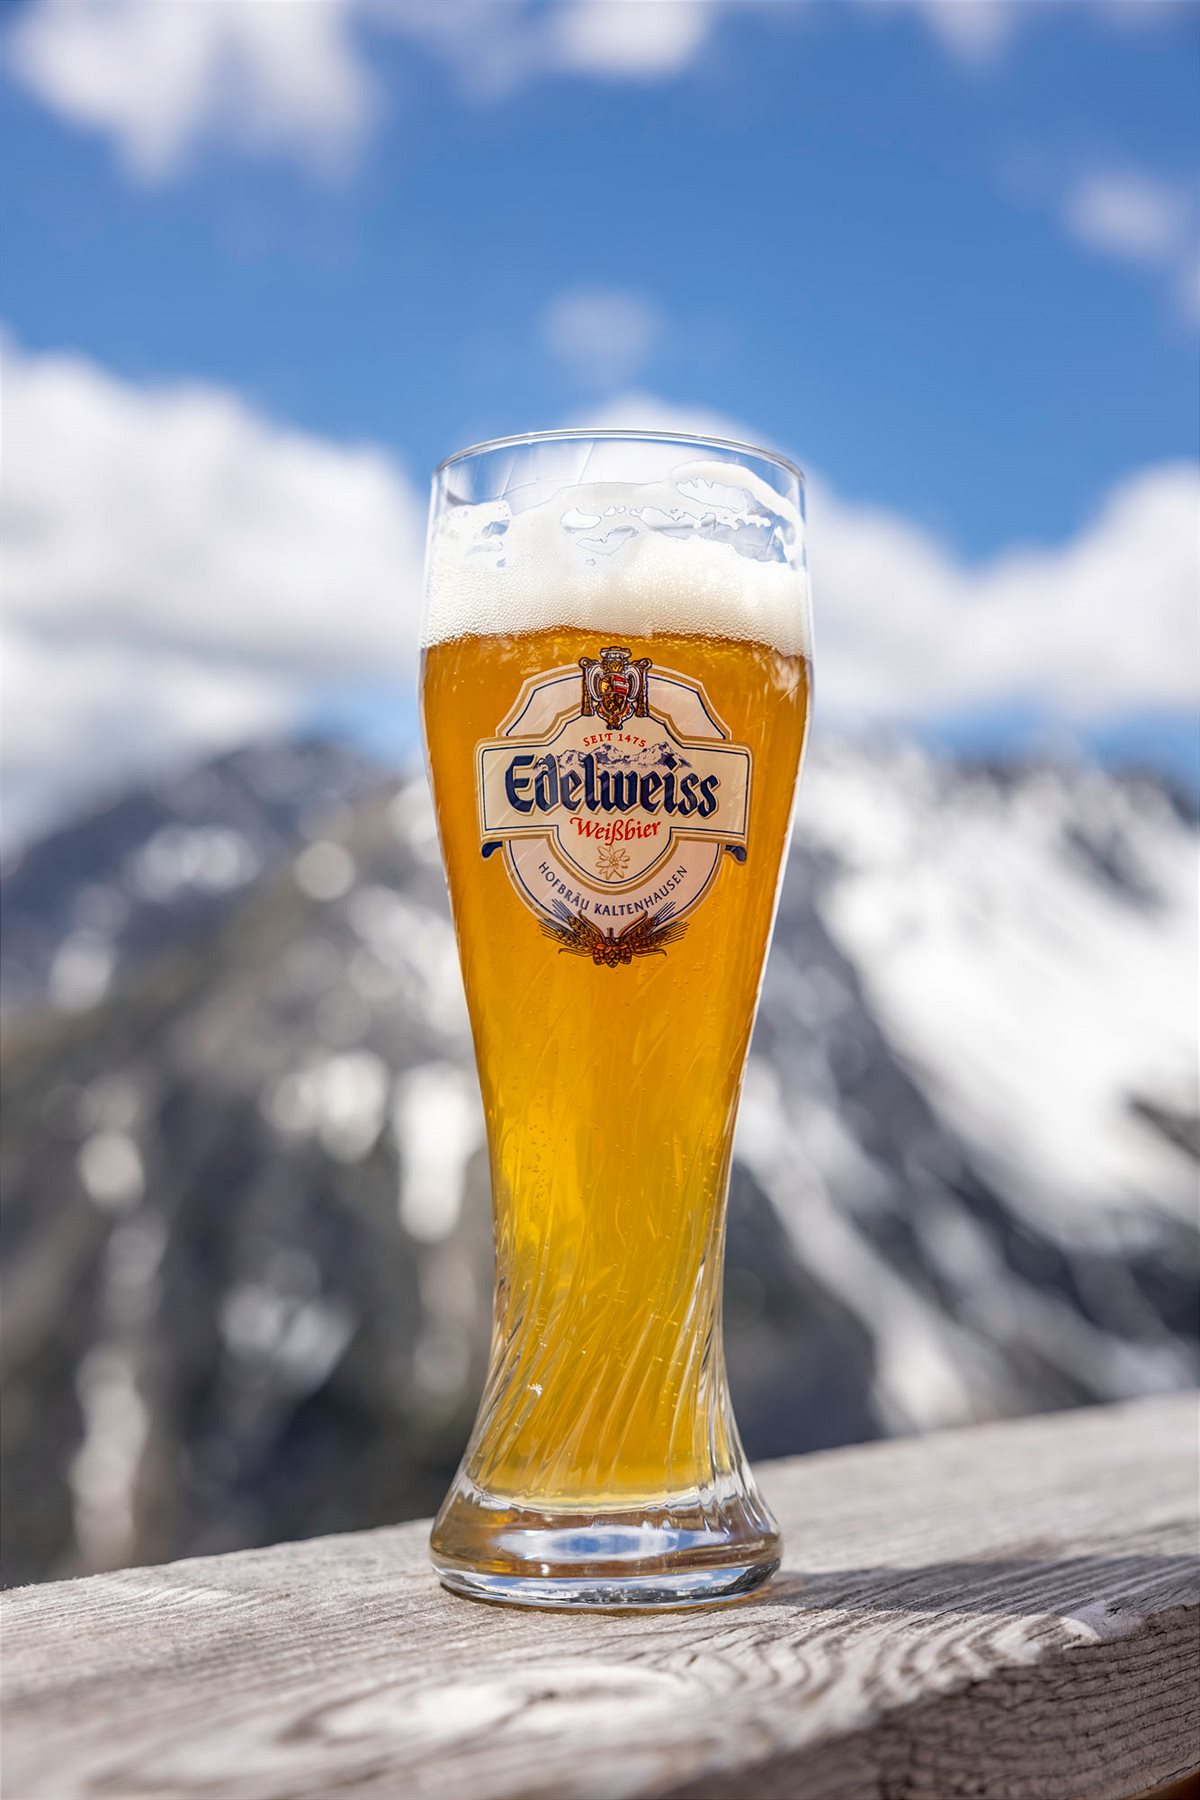 Edelweiss Alkoholfrei – verantwortungsvoller Weizenbiergenuss, der für echte Brautradition aus Österreich steht. 